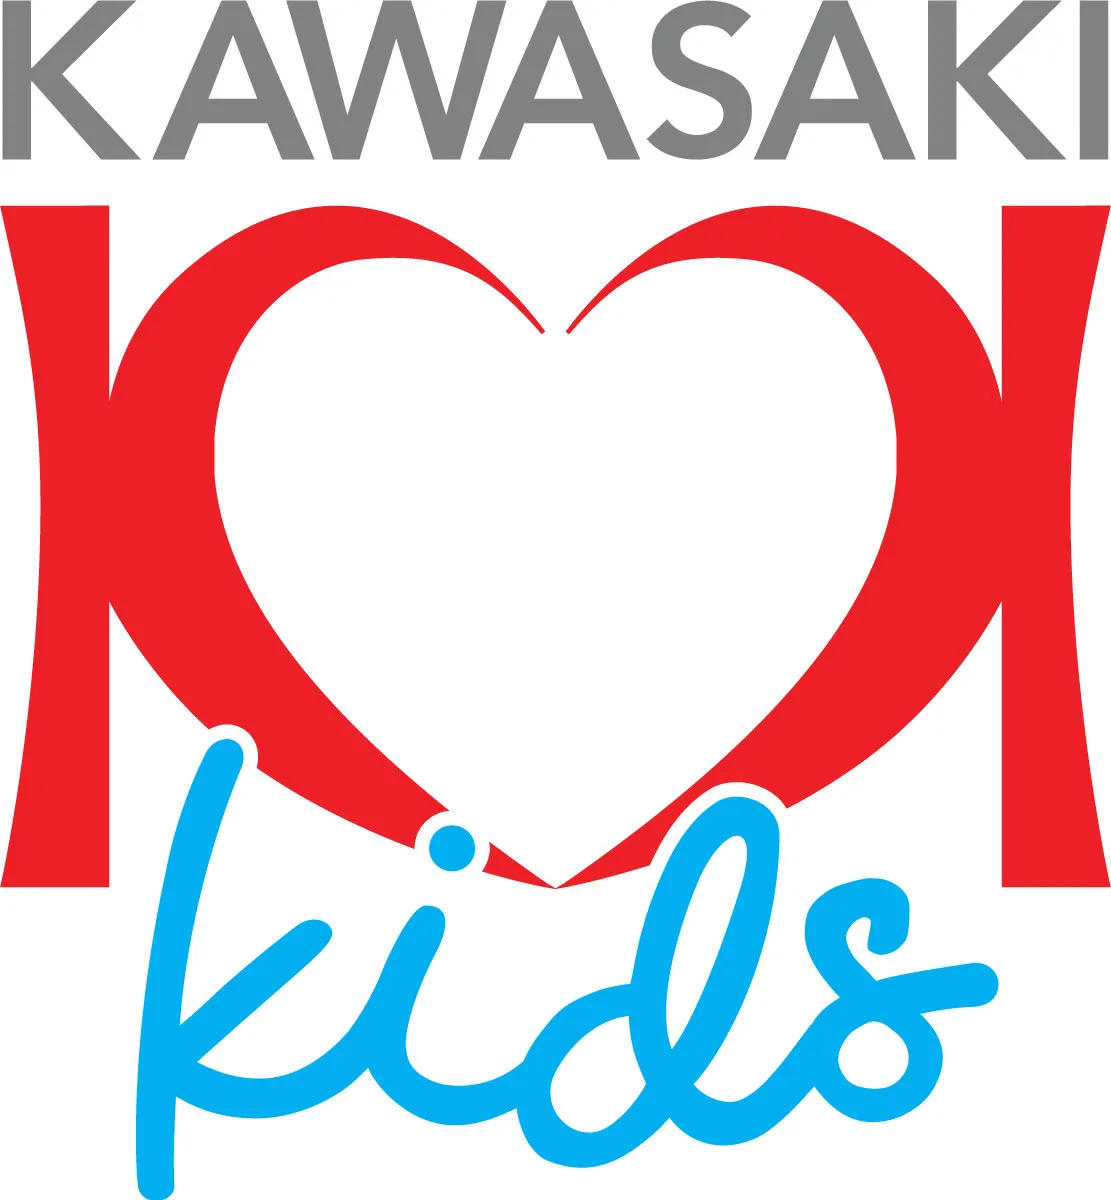 Kawasaki Kids logo 